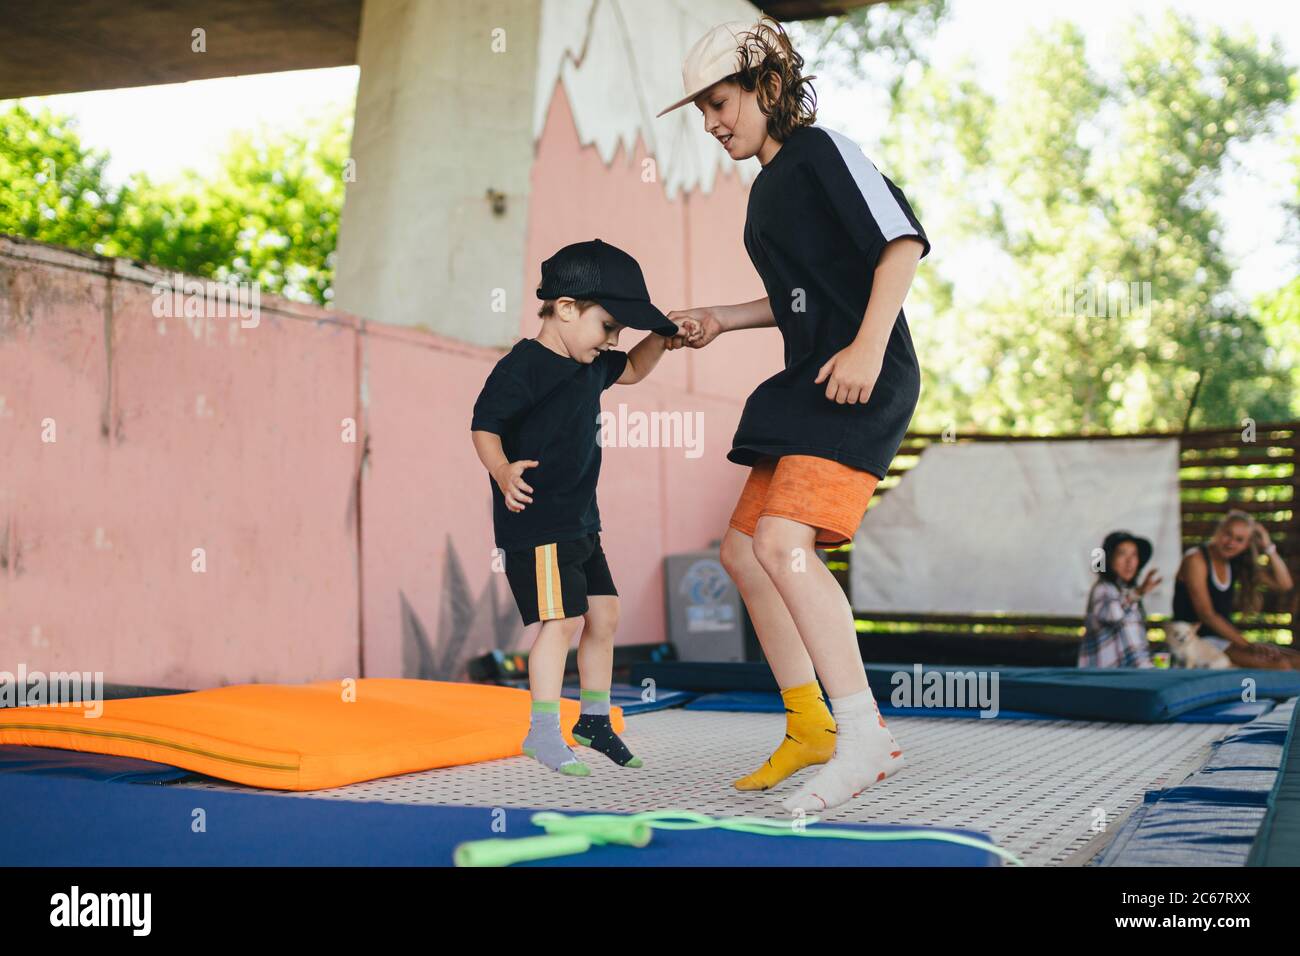 Les enfants d'origine caucasienne sautent ensemble sur un trampoline. Deux frères s'amusent sur un trampoline tenant les mains. Enfants sautant sur un trampoline à l'extérieur Banque D'Images